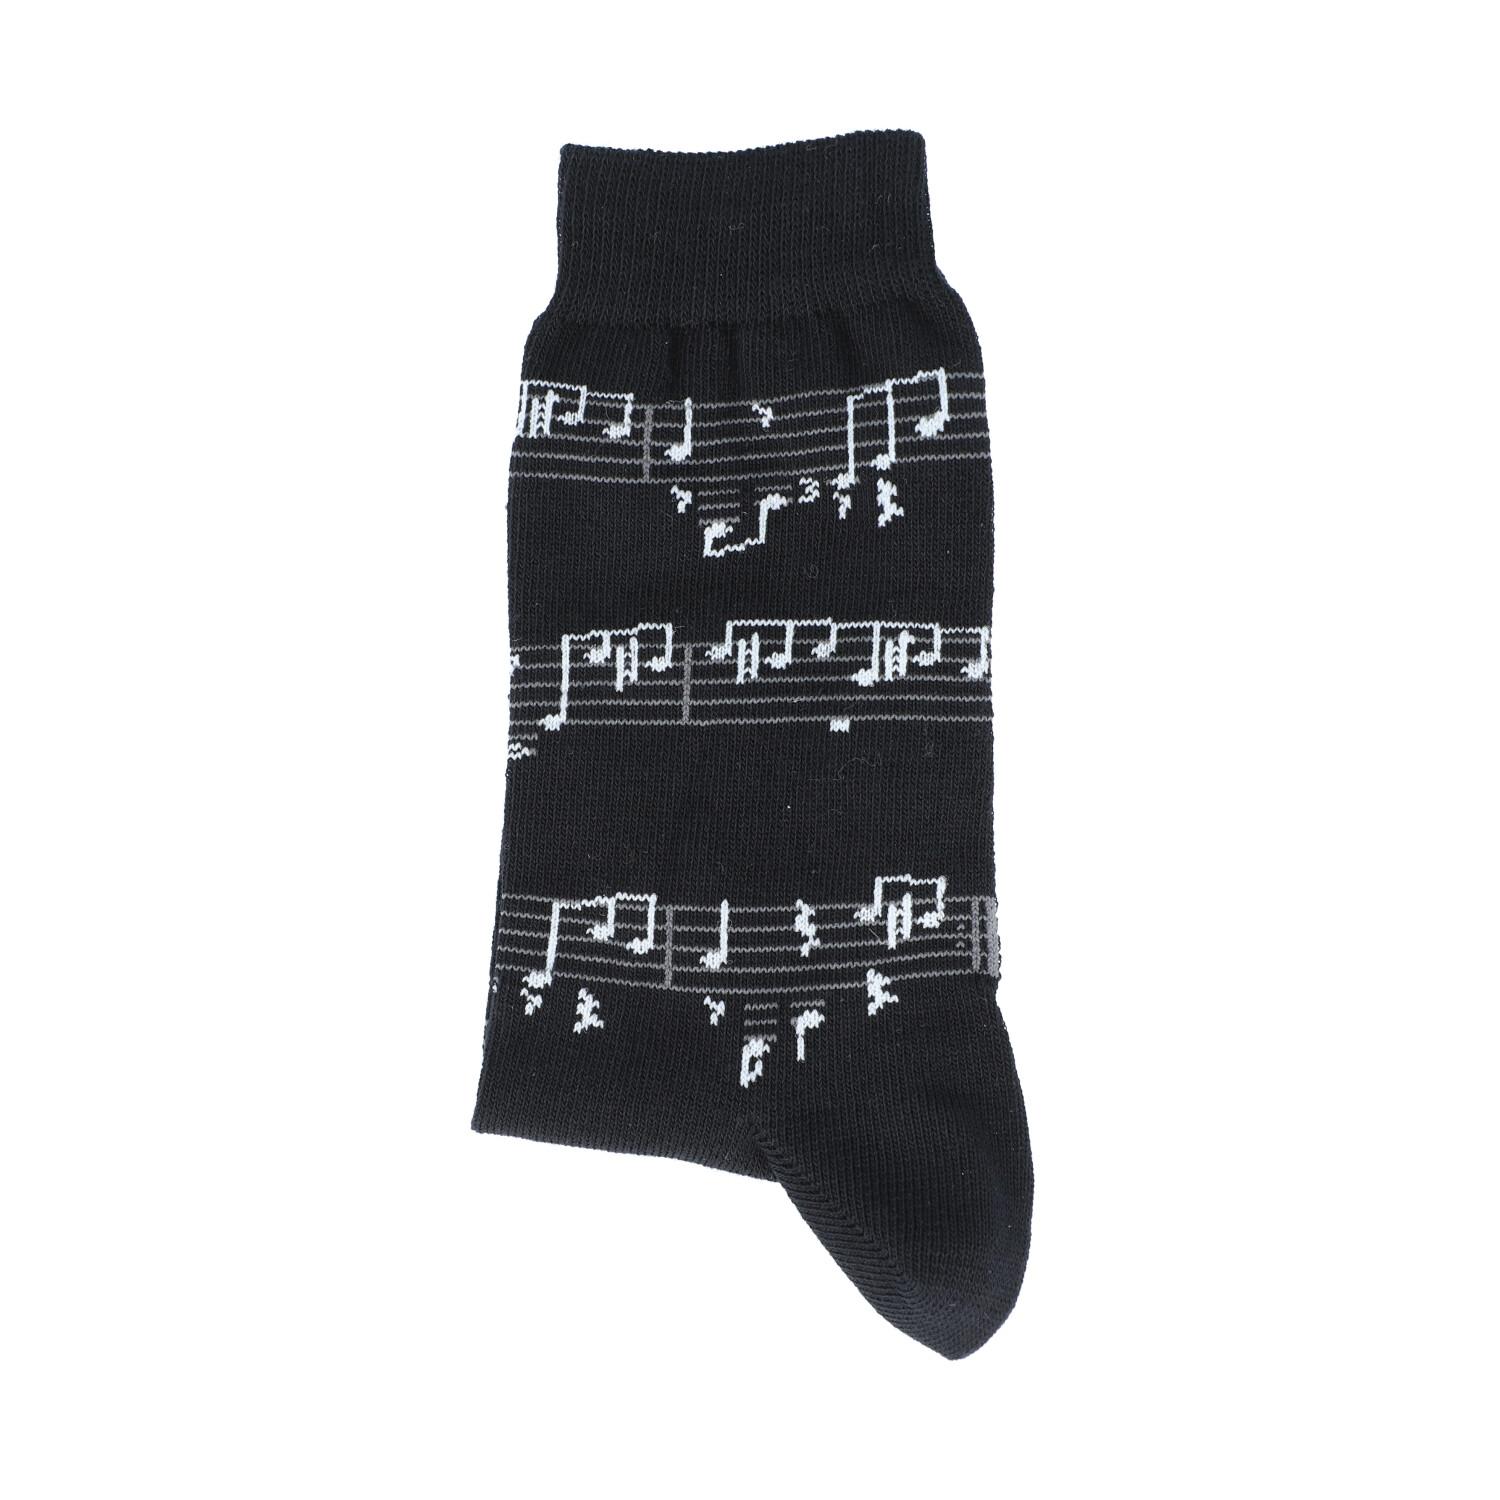 Socken mit weißen Notenlinien, Noten, Musik-Socken, 39-42